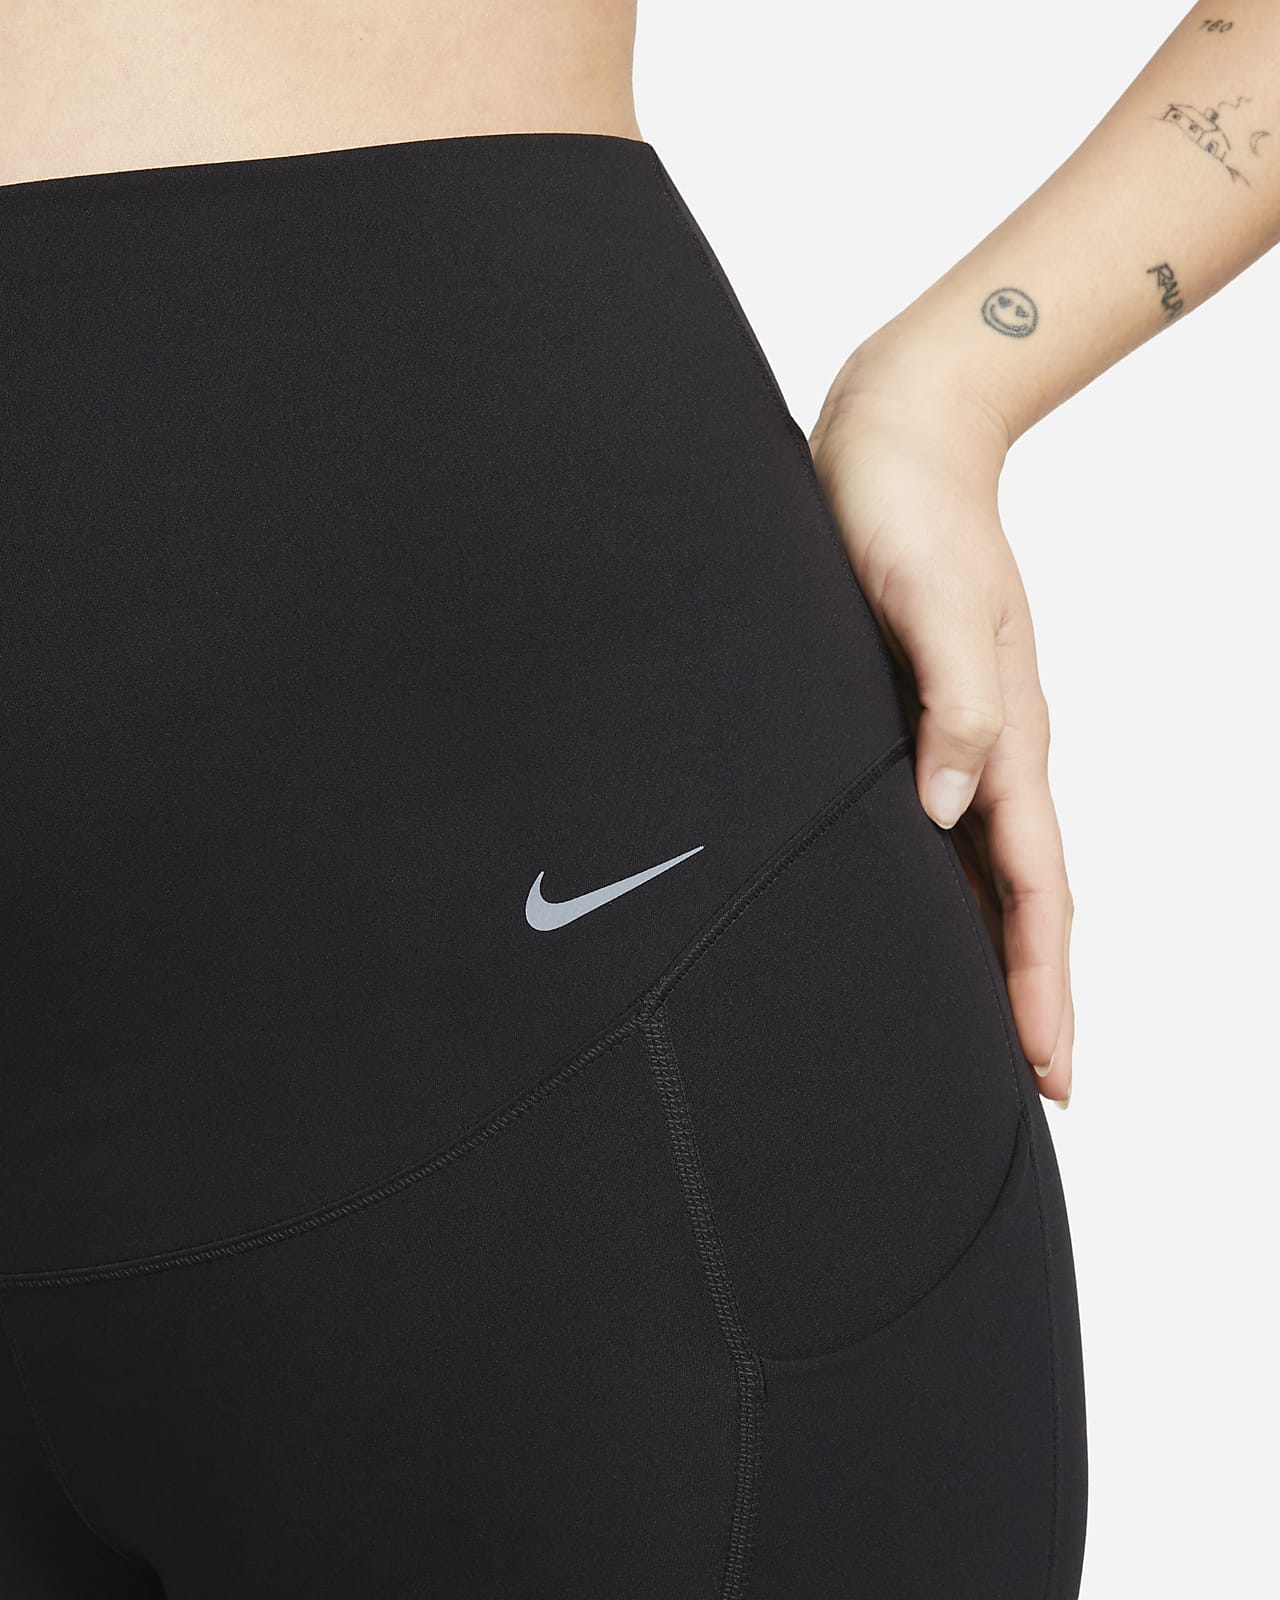 New Nike Zenvy Leggings  Comfortable and Supportive Women's Leggings